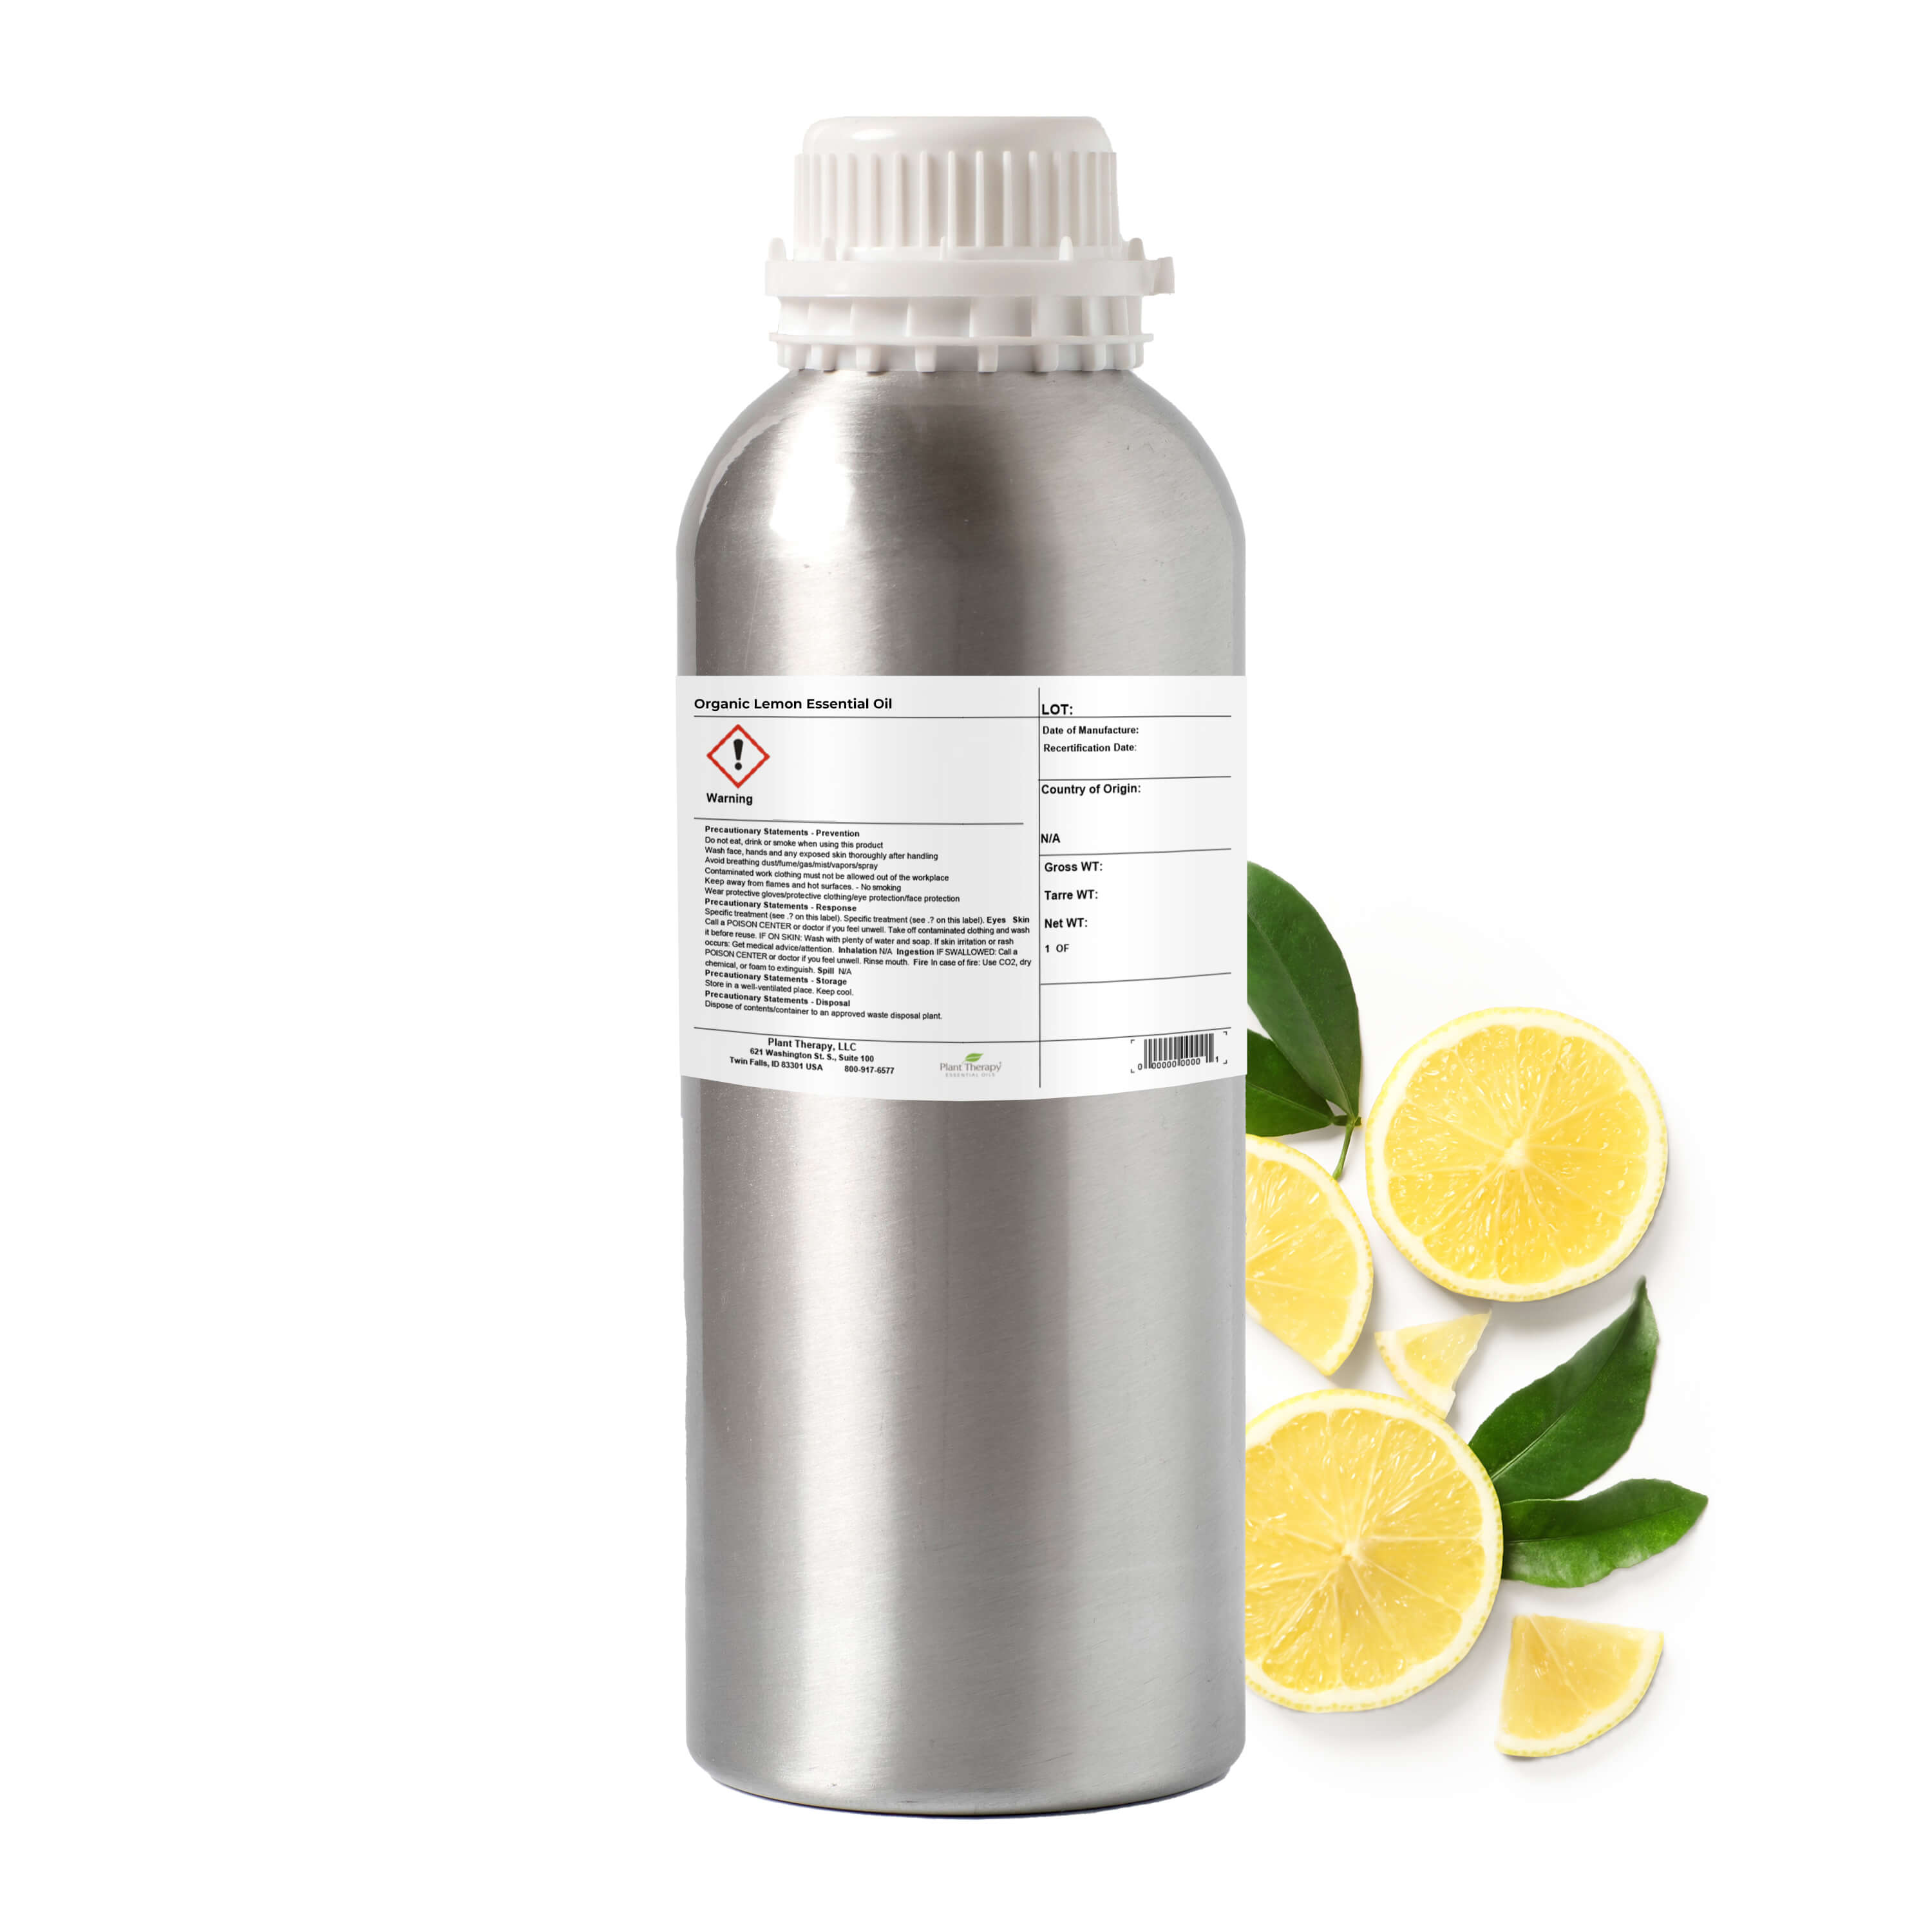 Lemon Oil, Lemon Oil Uses and Benefits, Lemon Oil Wholesale